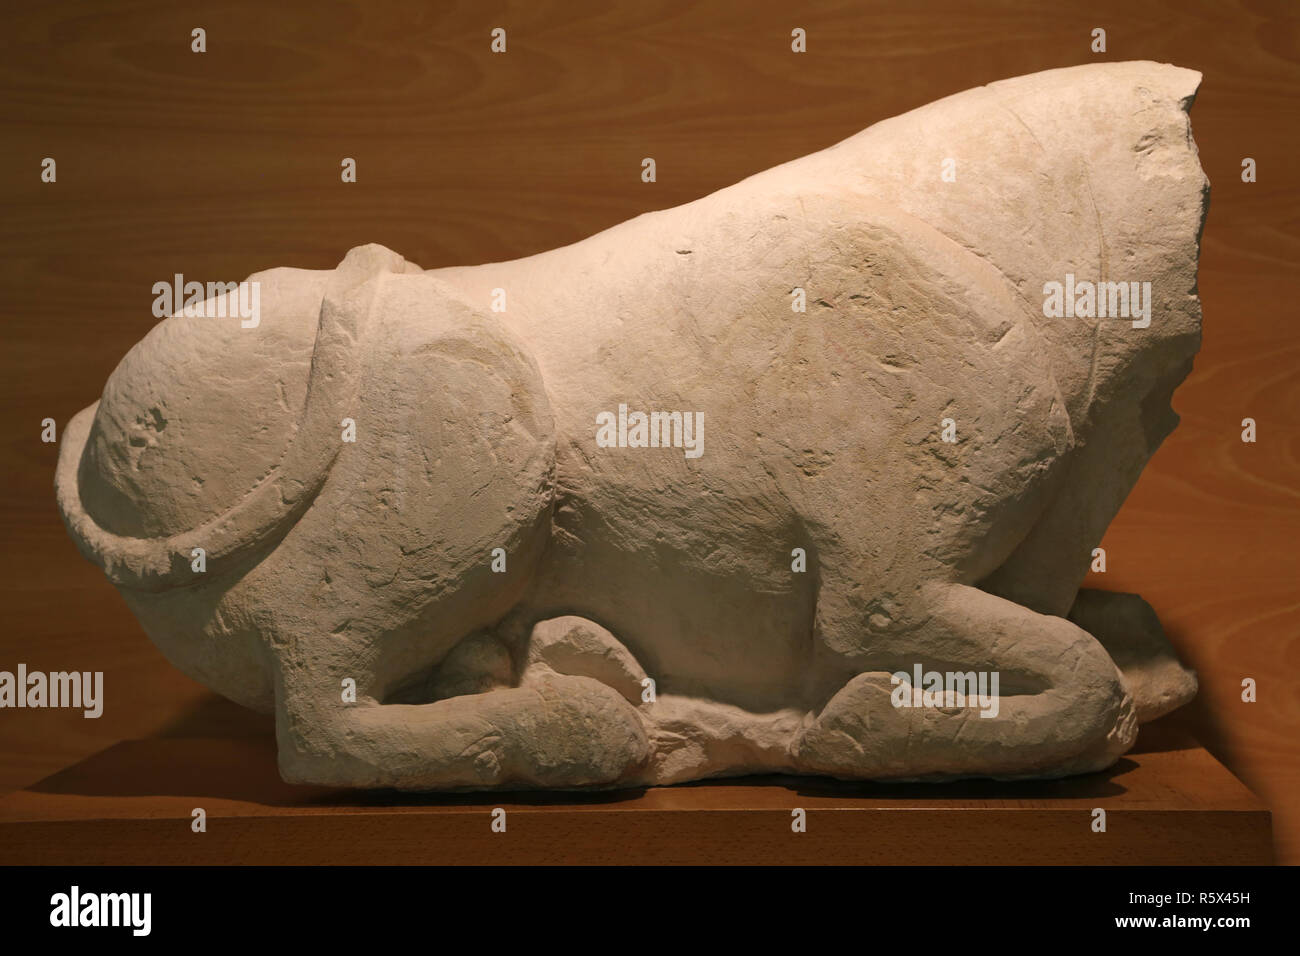 Ochse oder Stier sitzen. Skulptur aus Santaella (Cordoba). Iberische Kultur, 5th-4th Cent. BC. Kalkstein. Archäologisches Museum von Katalonien. Stockfoto